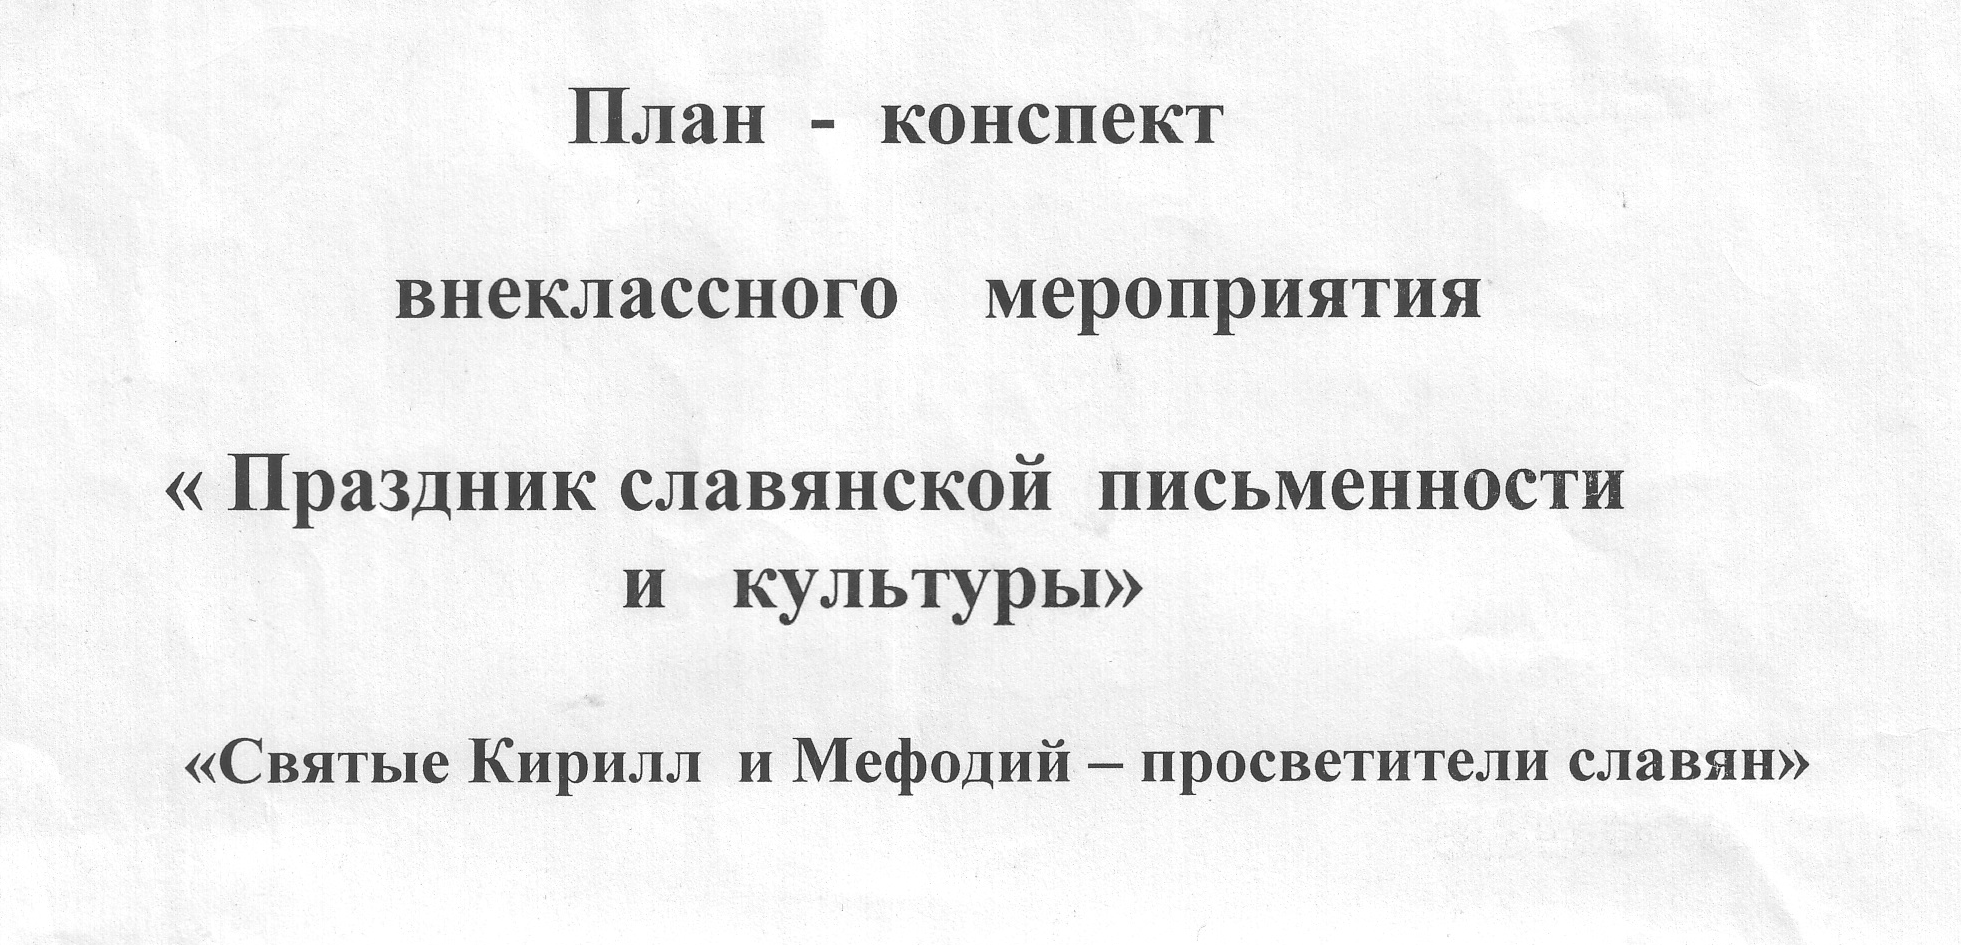 Конспект внеклассного мероприятия «Праздник славянской письменности и культуры»